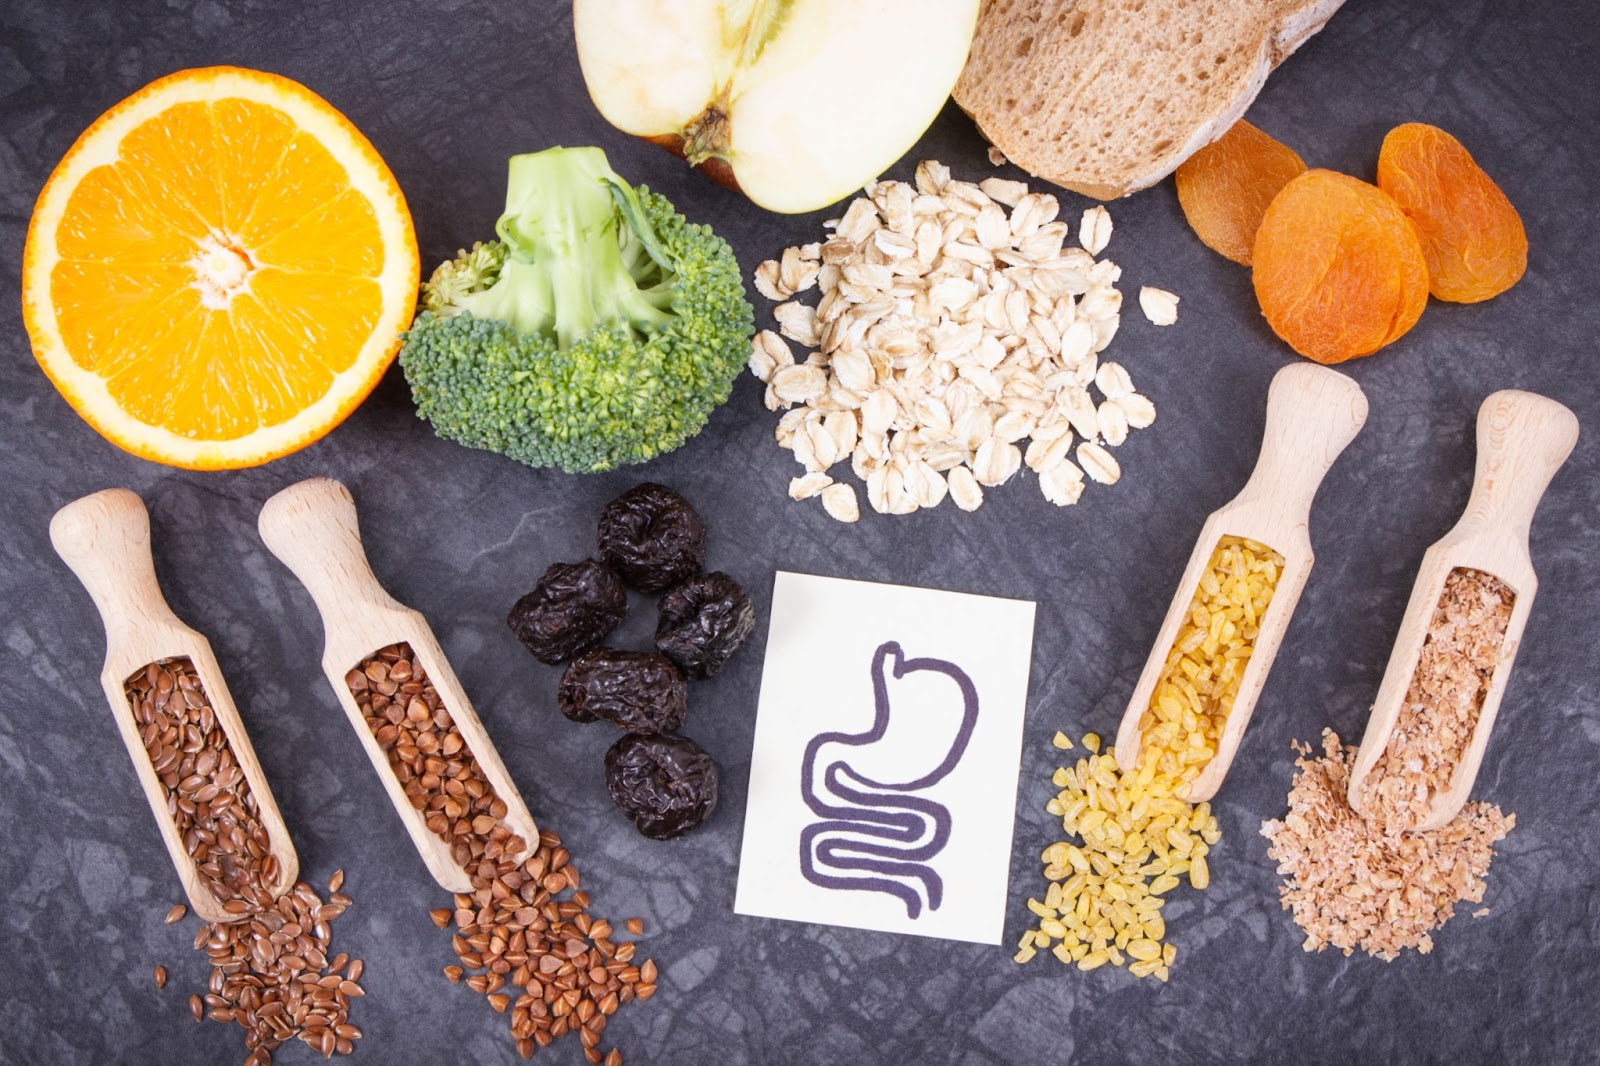 Aliments contenants des fibres pouvant causer des inconforts digestifs présentés sur un fond foncé accompagné d'une fiche illustrant le système digestif